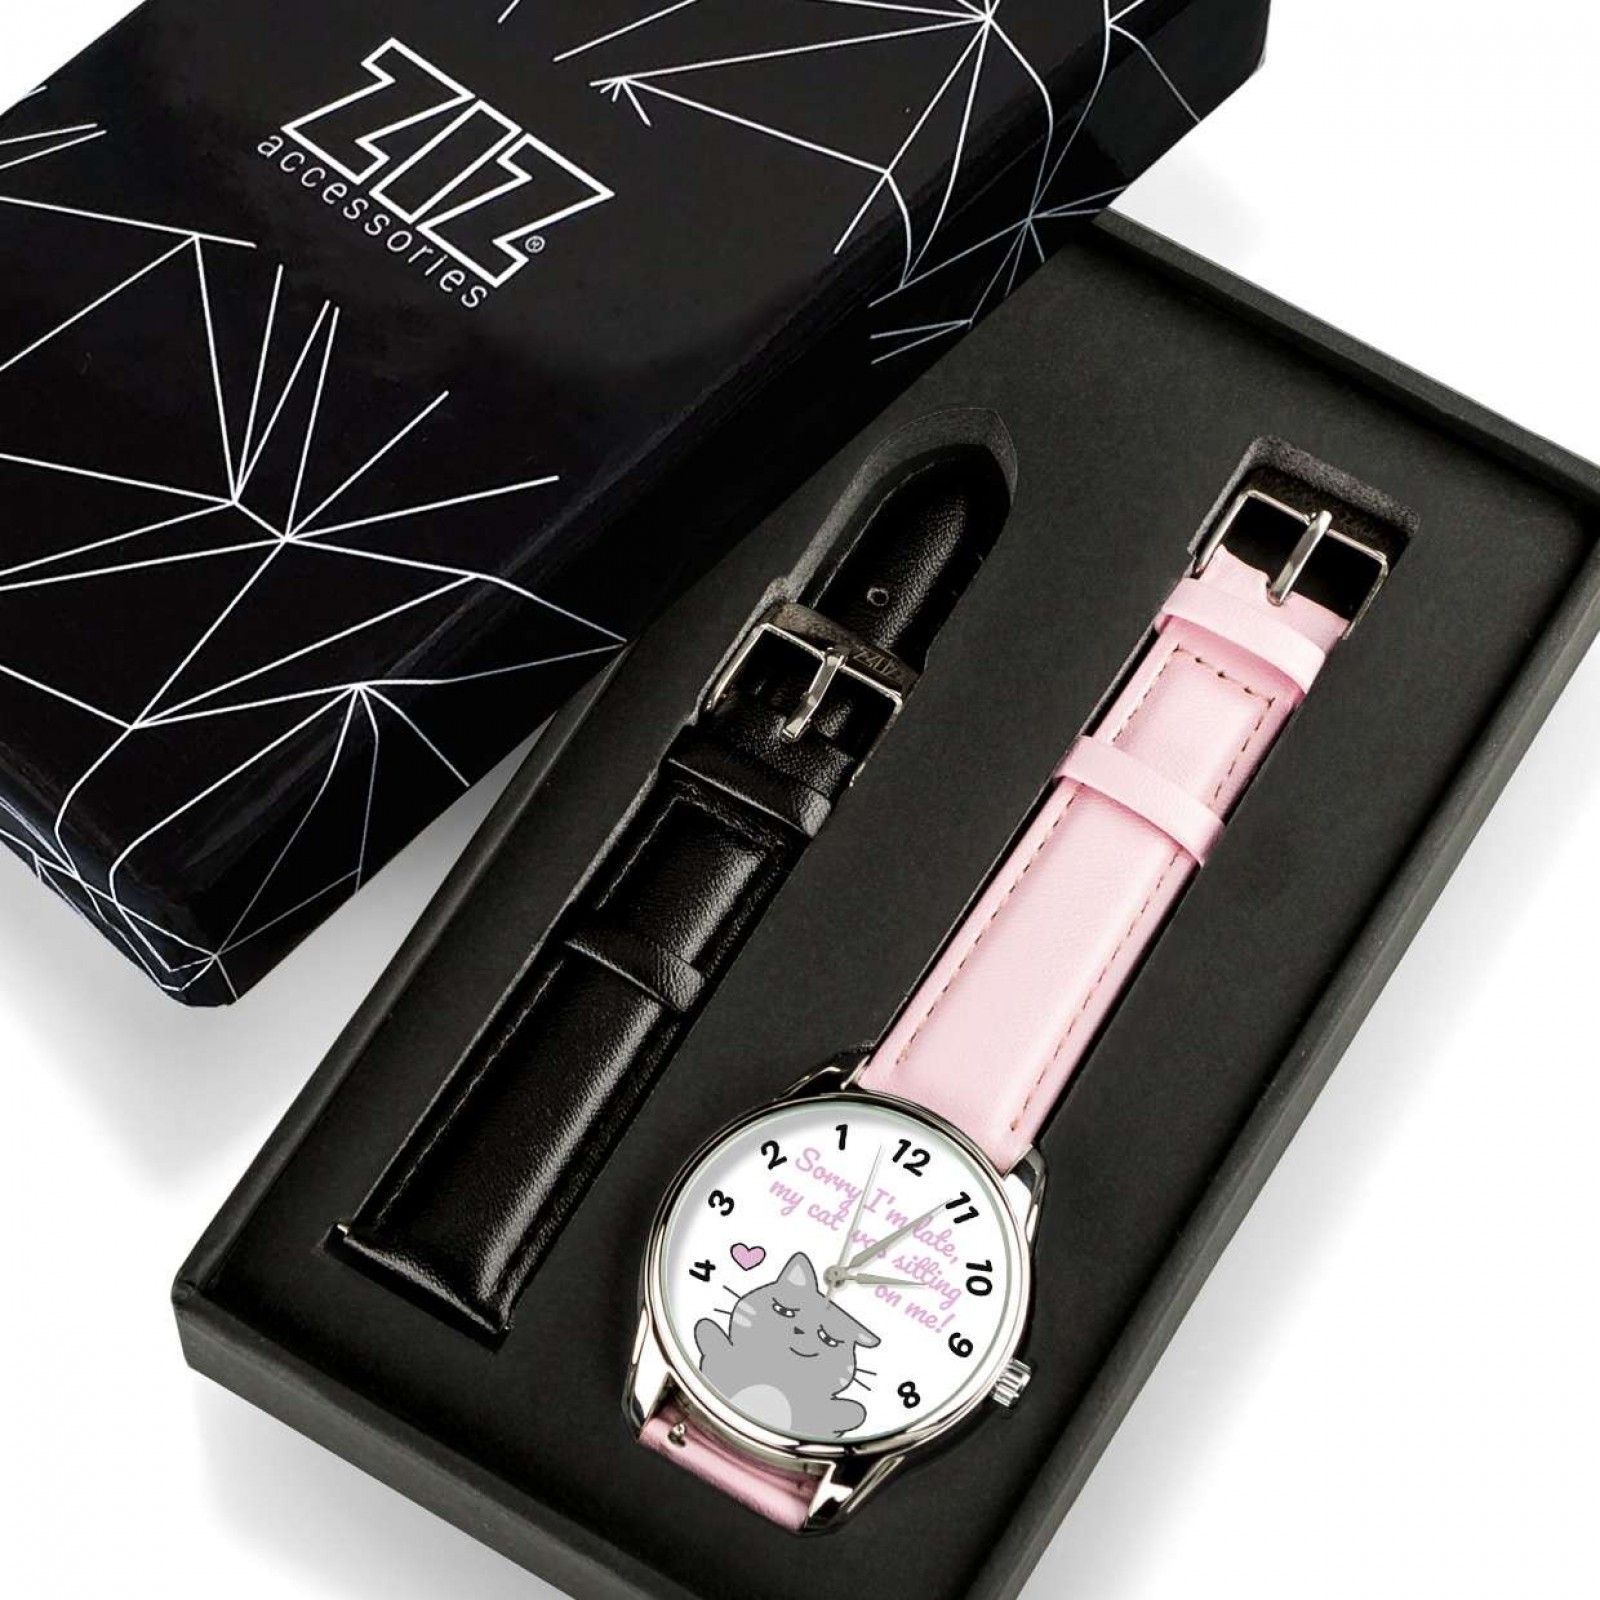 Годинник ZIZ зі зворотним ходом Котики не спізнюються, ремінець пудровий-рожевий, срібло і доп. ремінець 142934